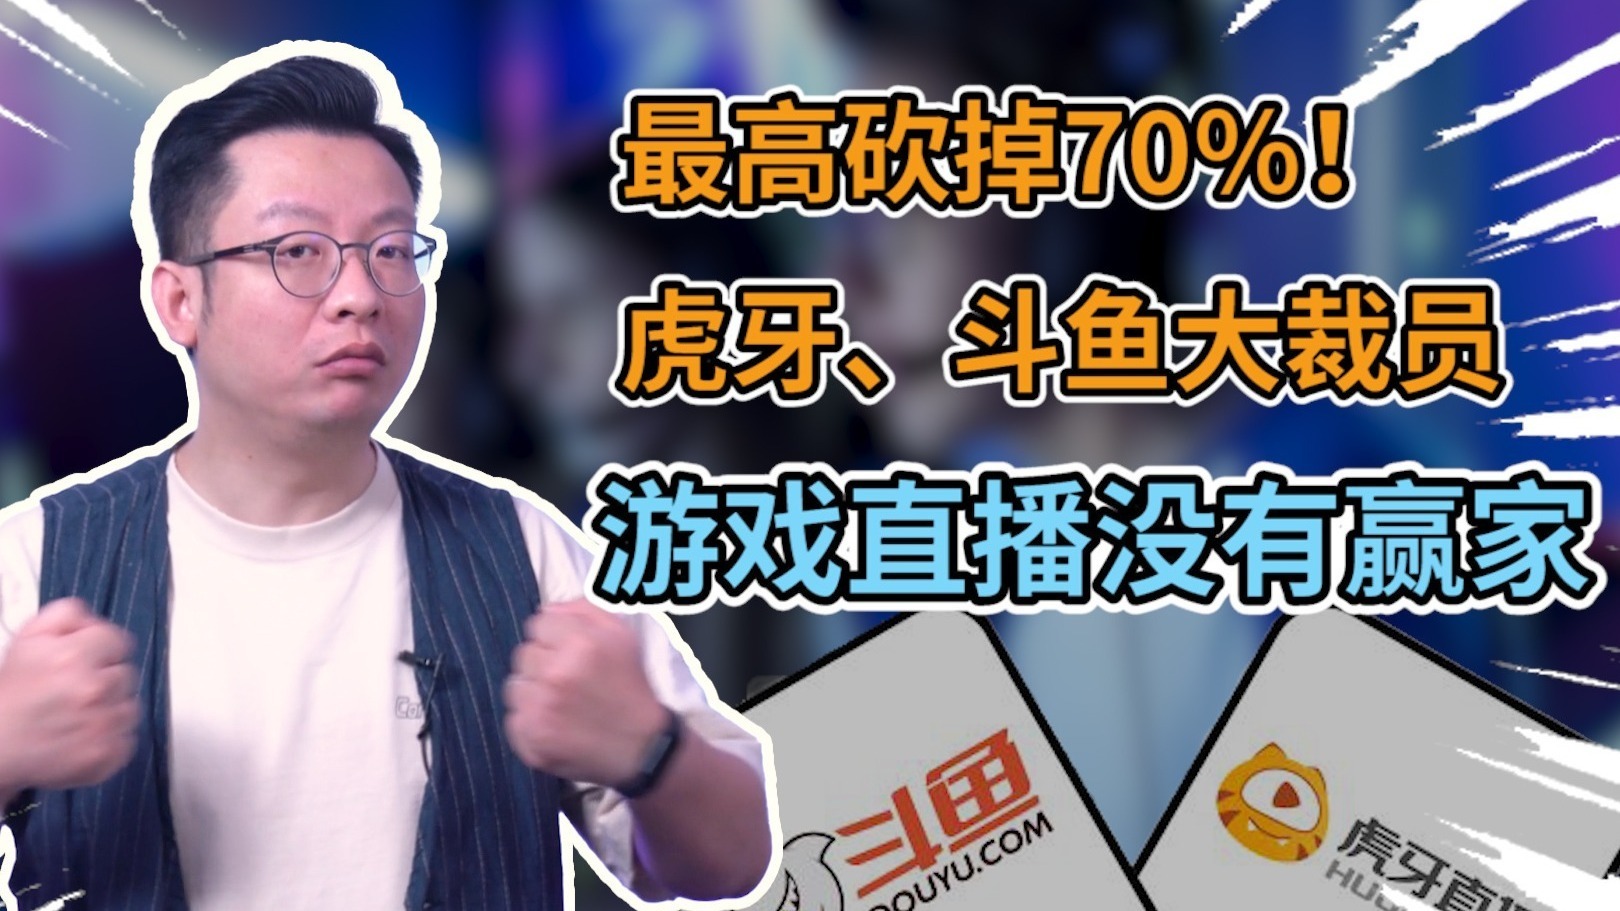 斗鱼CEO陈少杰因涉嫌开设赌场罪被逮捕：公司市值一夜减少1.36亿元-股票频道-和讯网